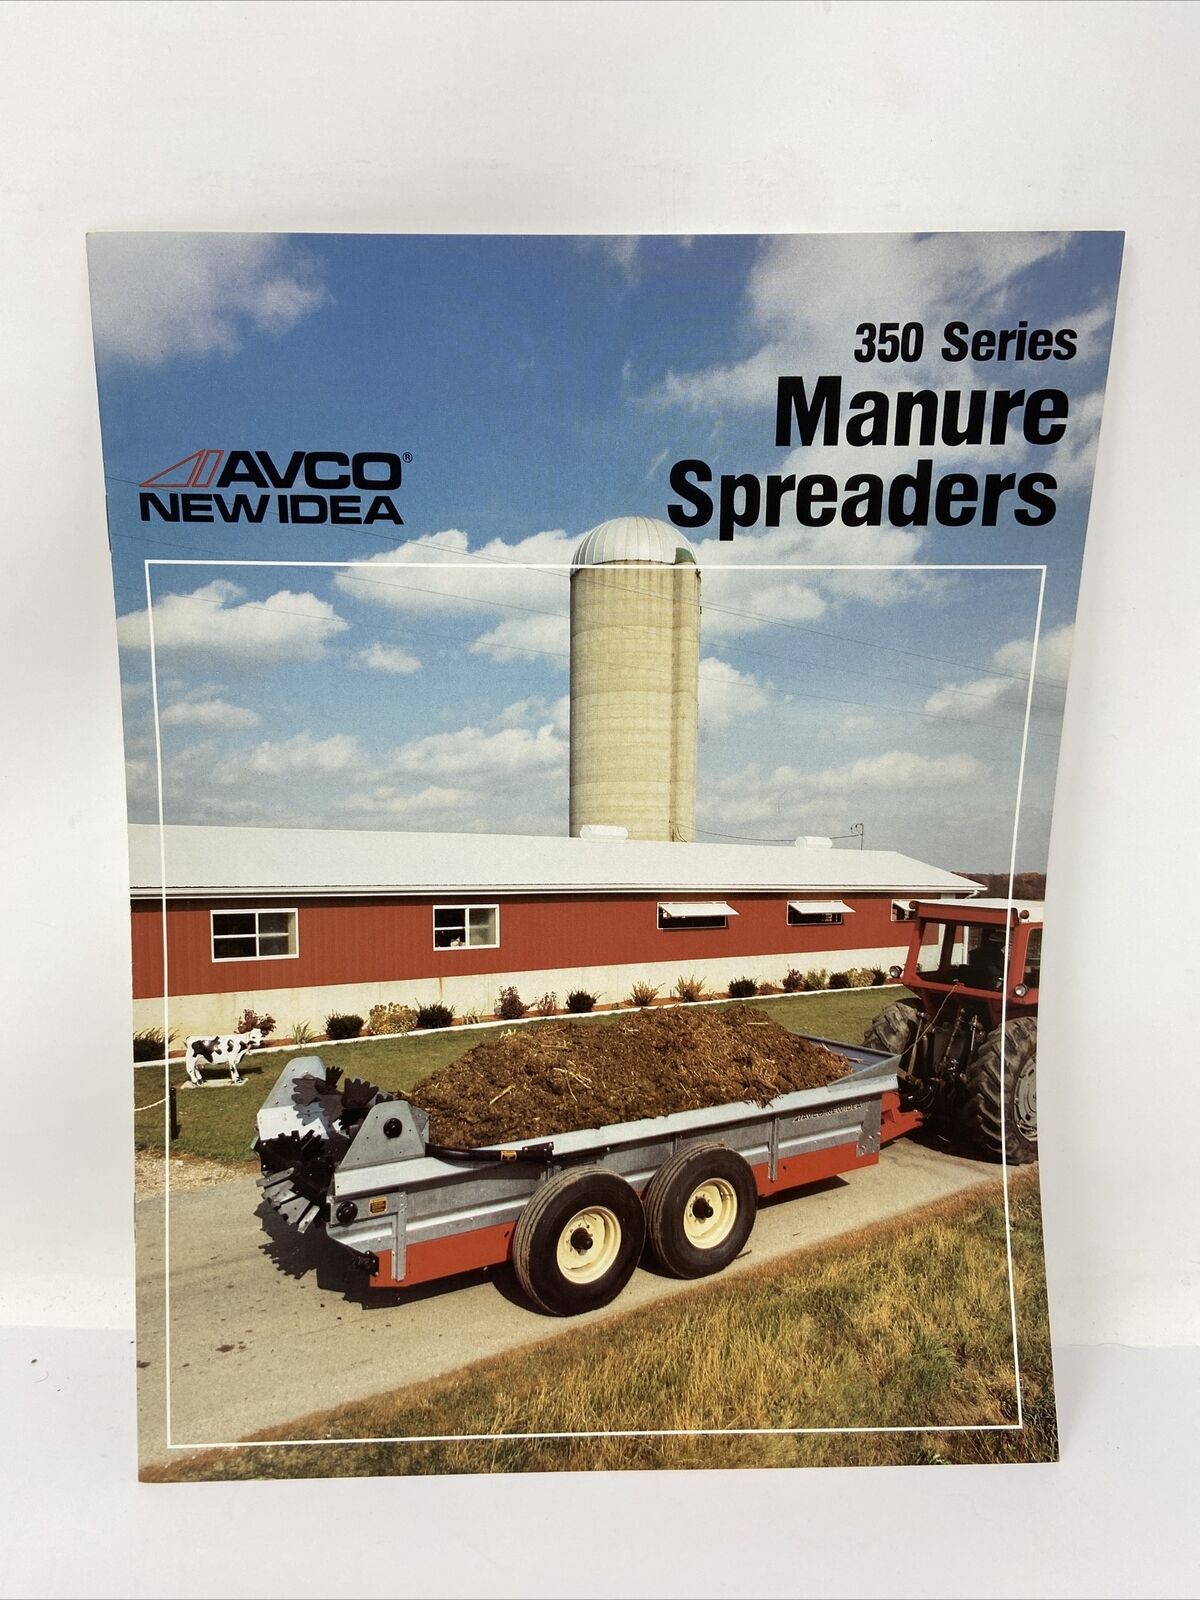 AVCO New Idea Manure Spreaders 350 Series Sales Brochure Vintage Photos Farming